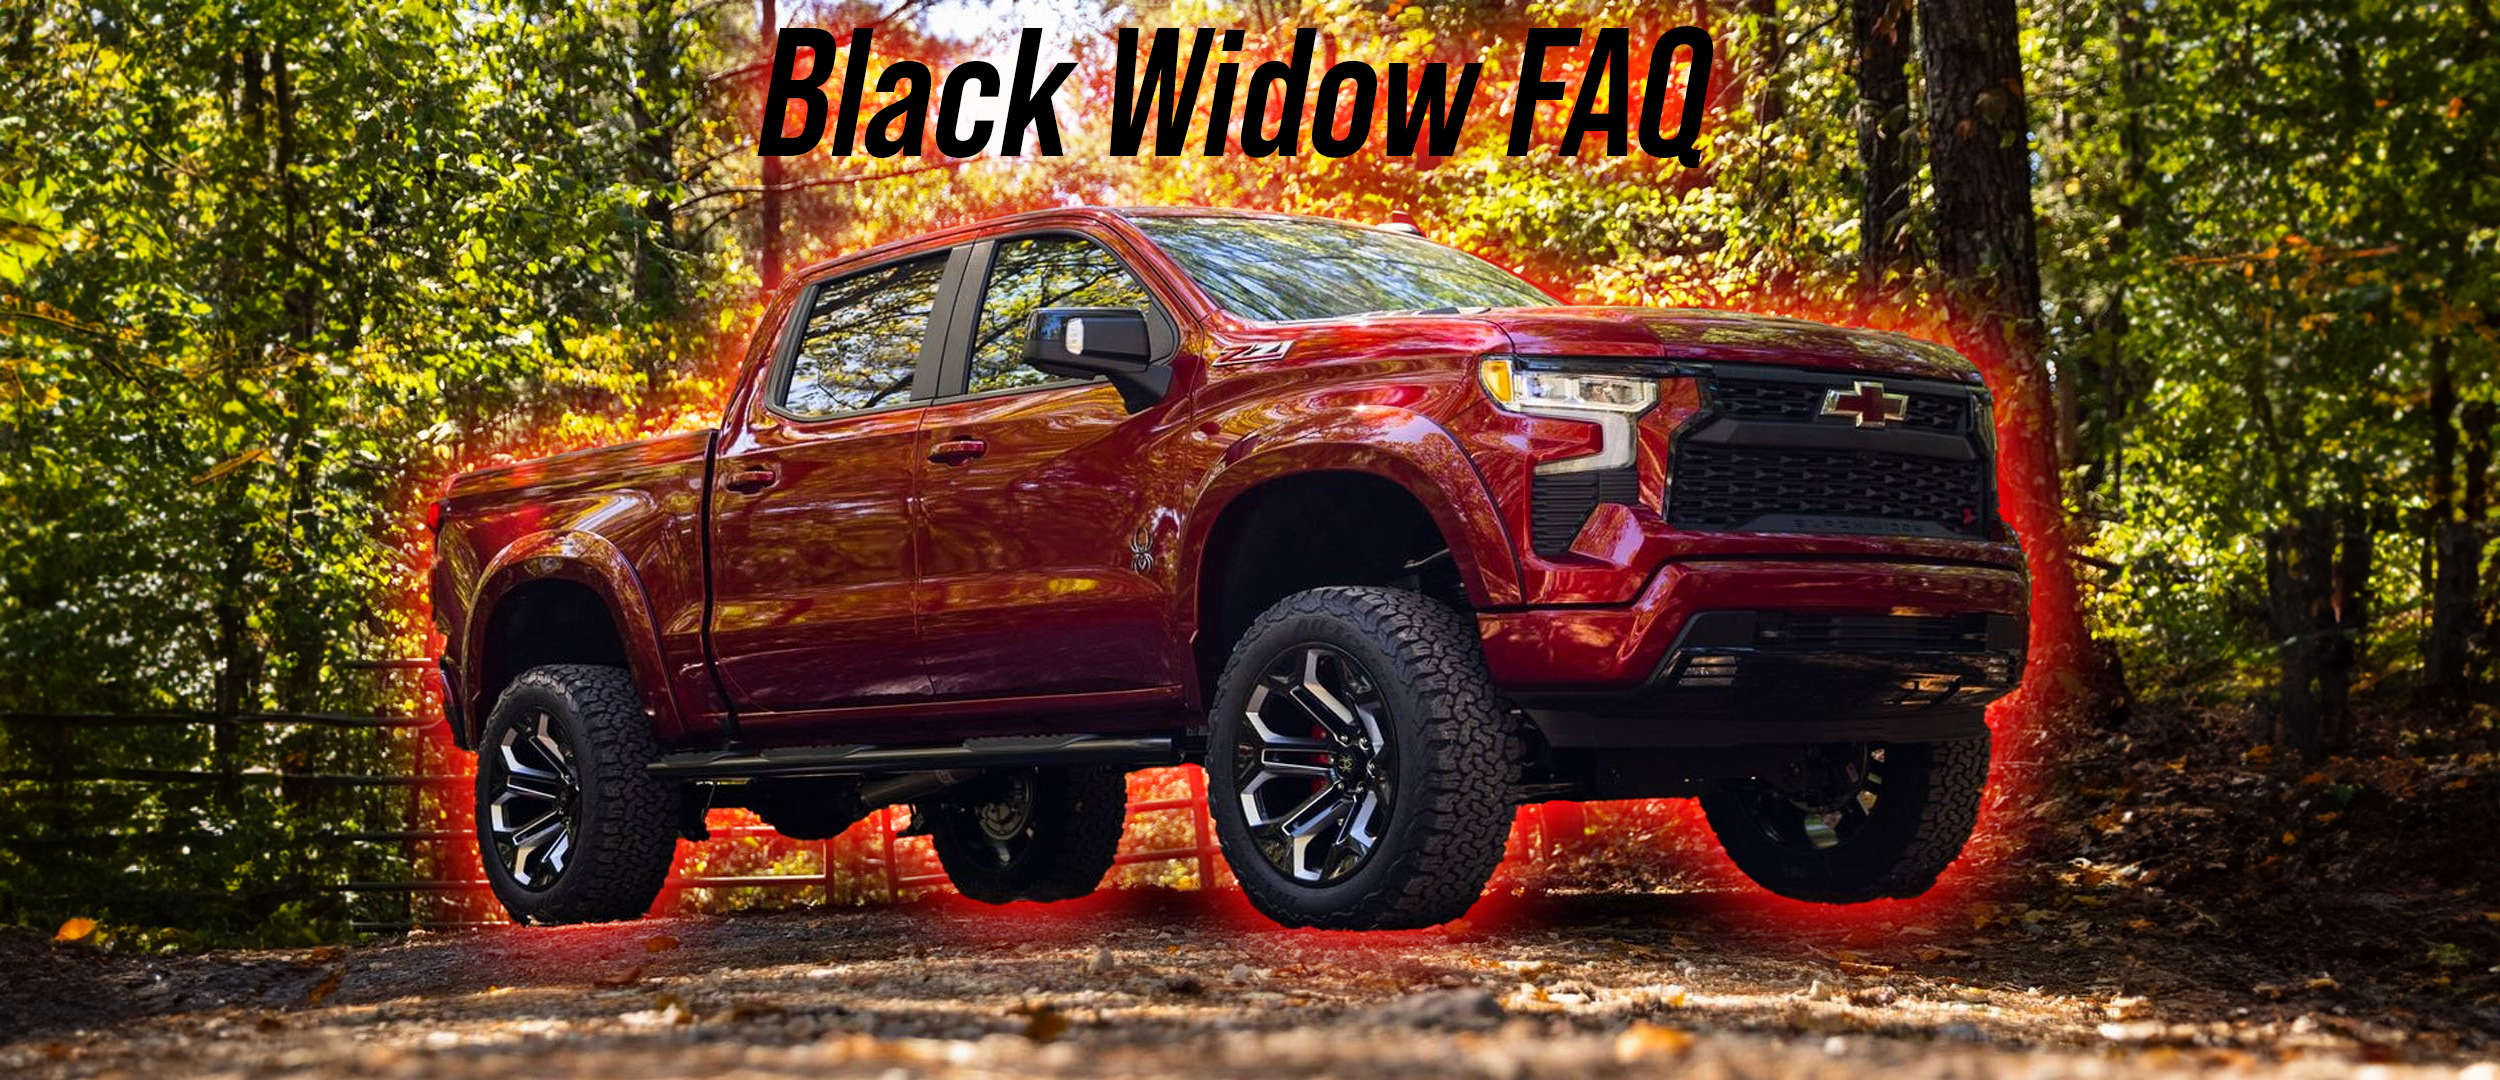 Black Widow FAQ